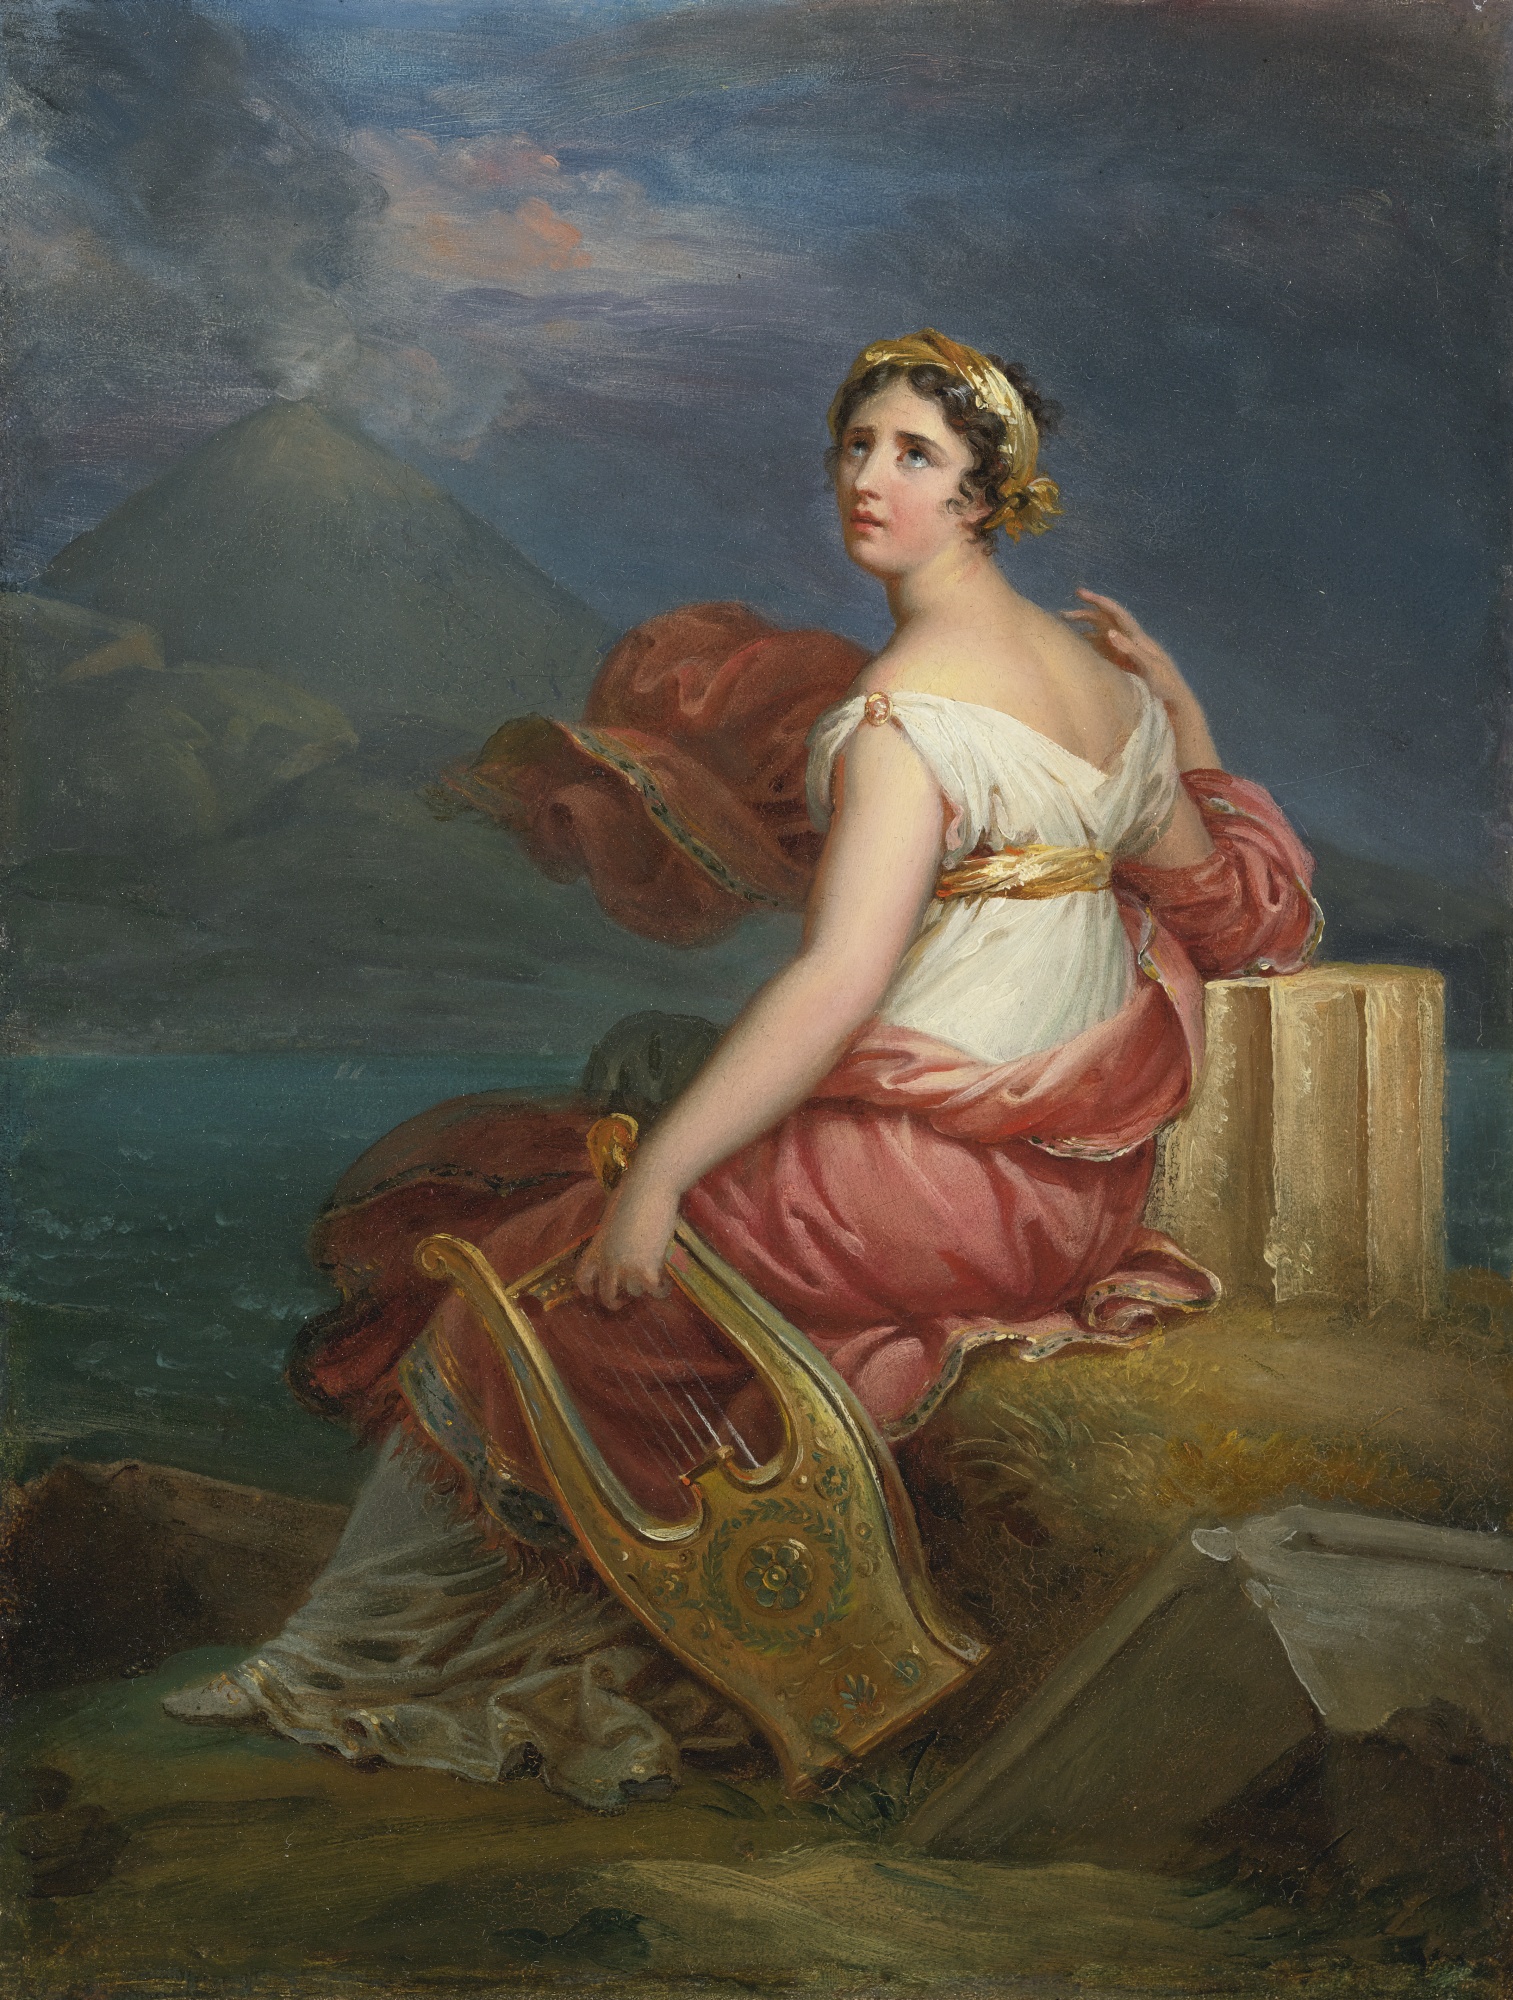 Lo sublime y lo pintoresco. Visiones de Roma y el arte en Madame de Staël.